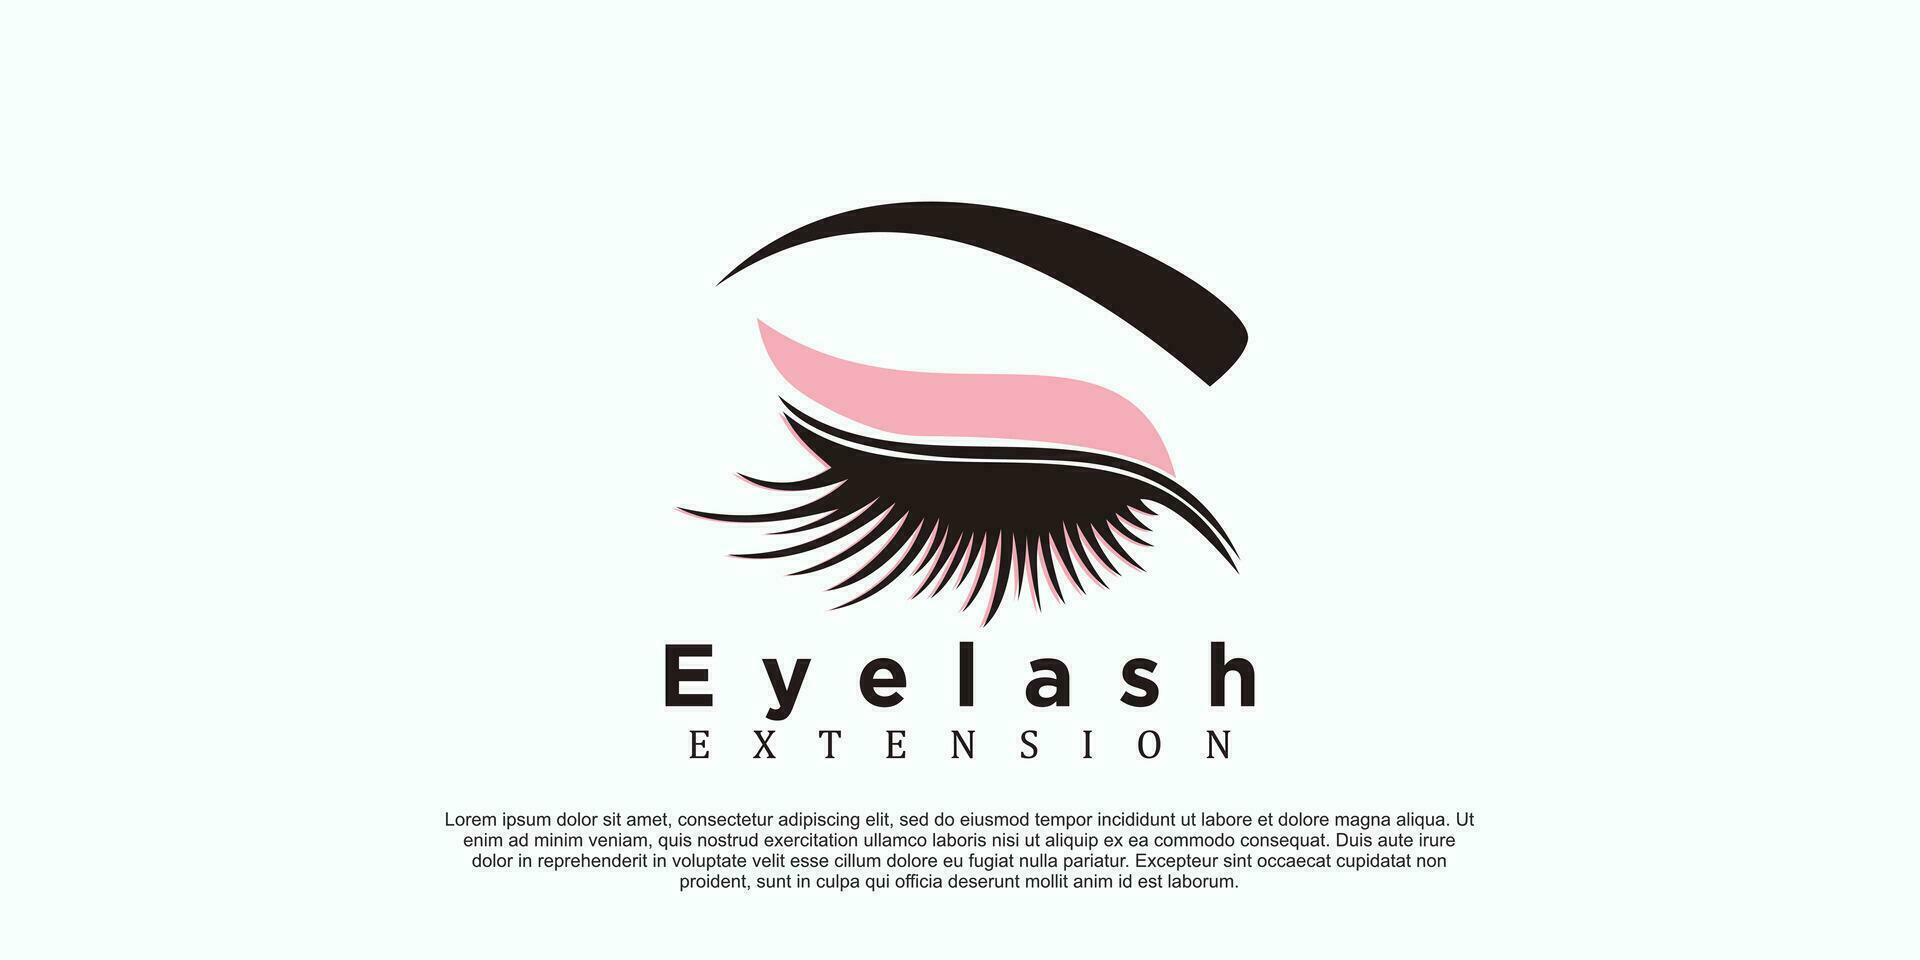 eyelash logo design with beauty concept vector